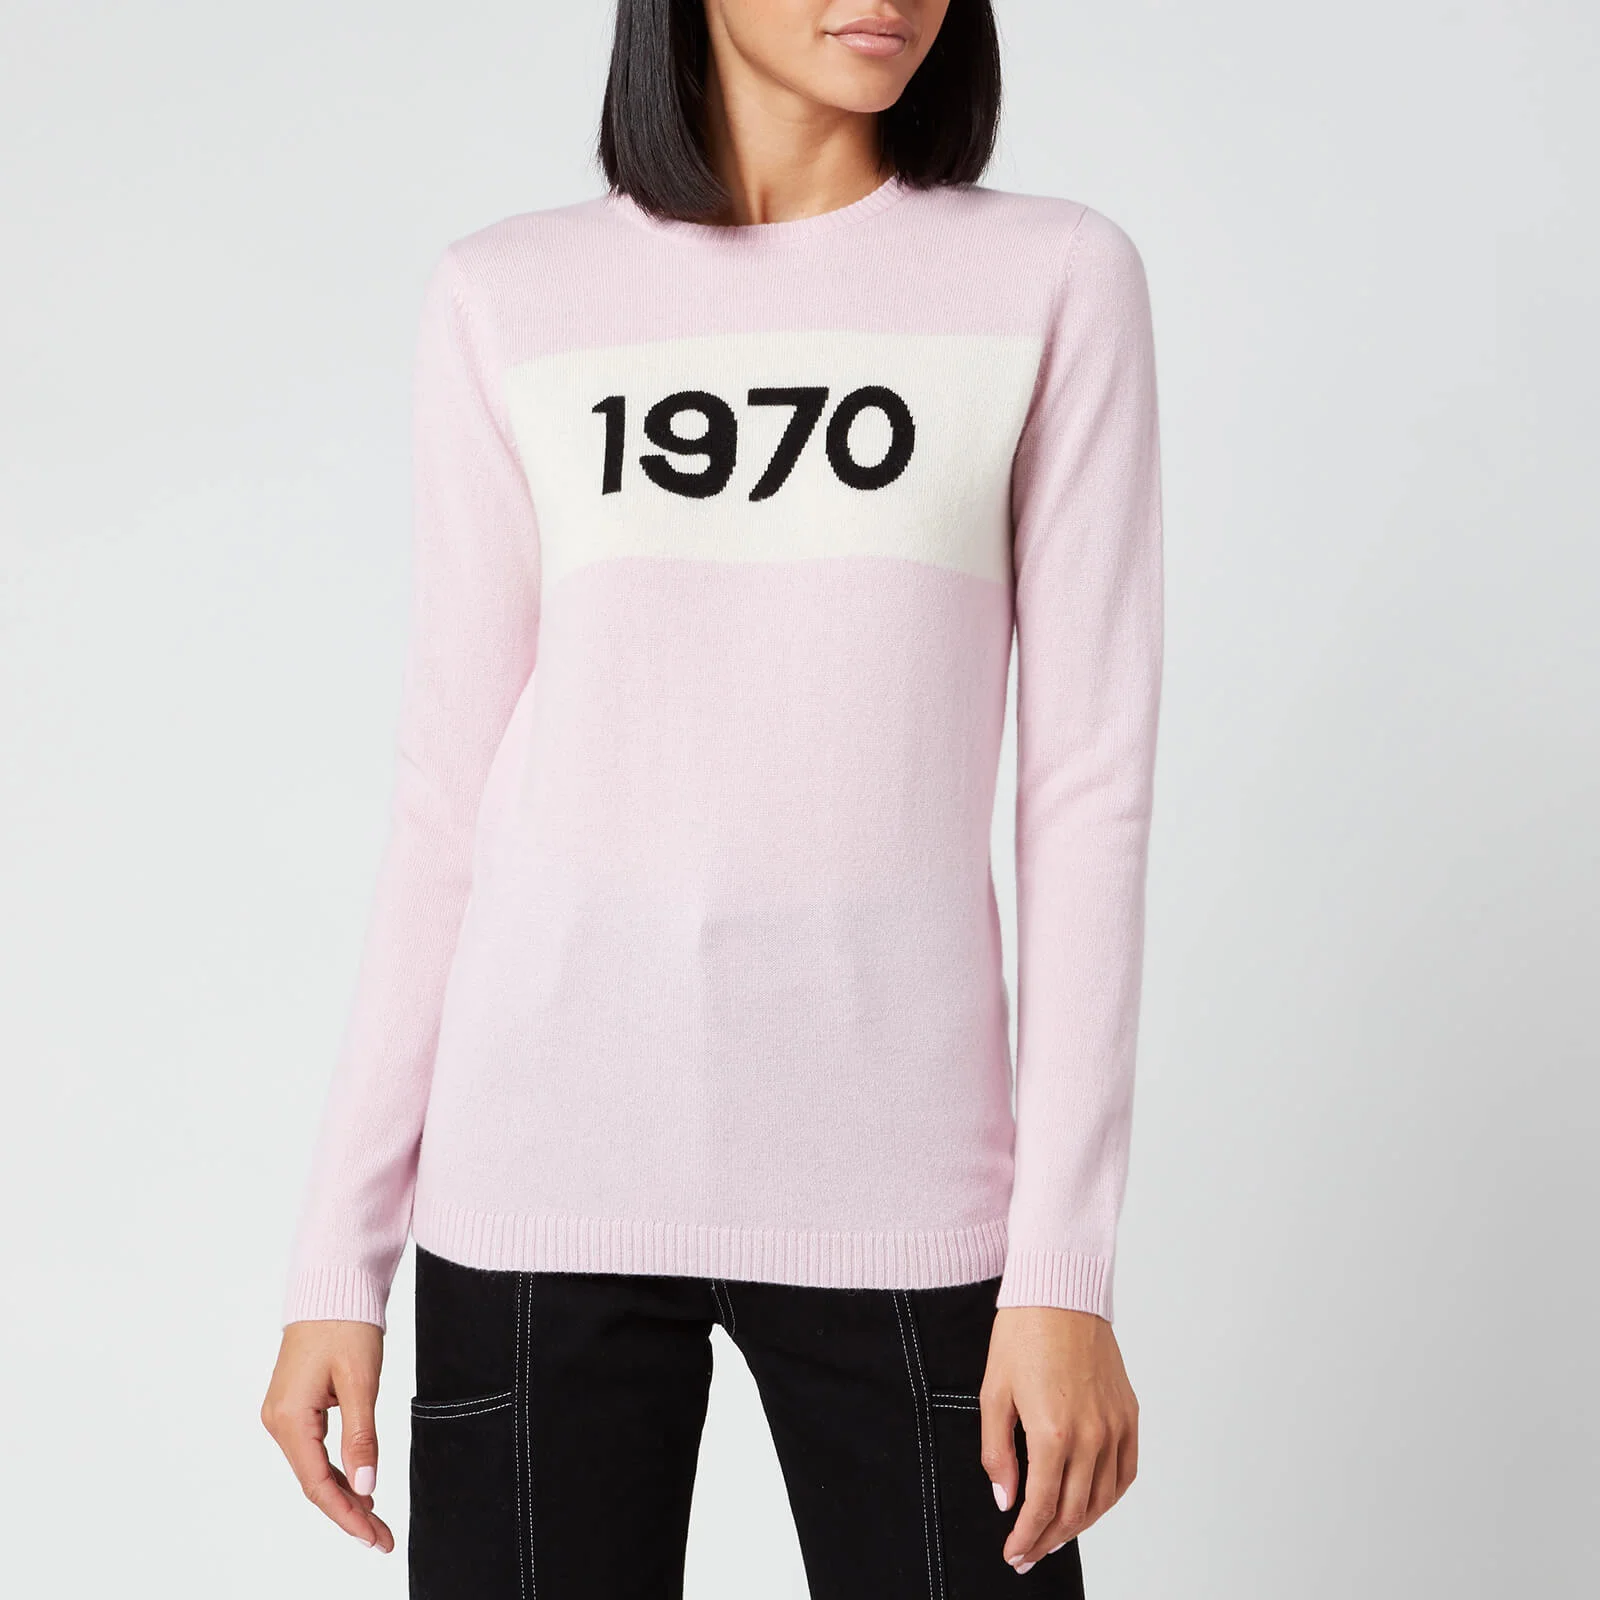 Bella Freud Women's 1970 Cashmere Jumper - Pink Image 1